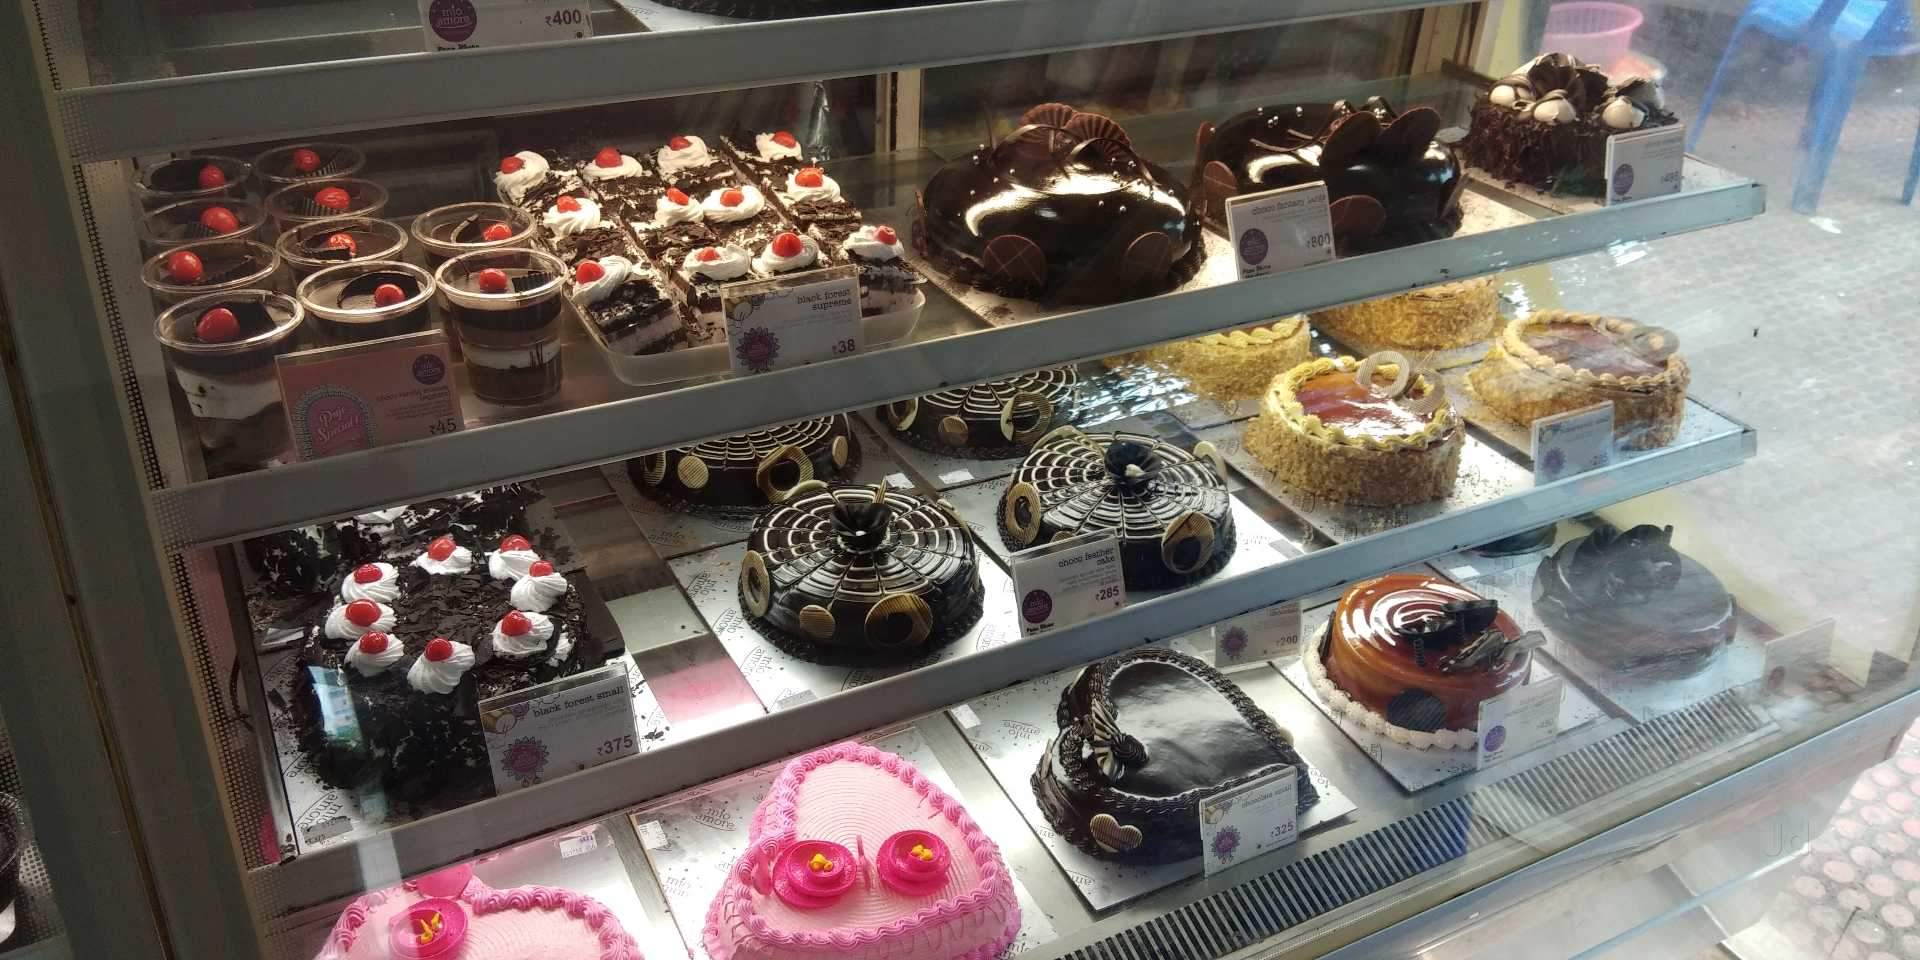 Mio amore cake shop - Cake shop - Puri - Odisha | Yappe.in